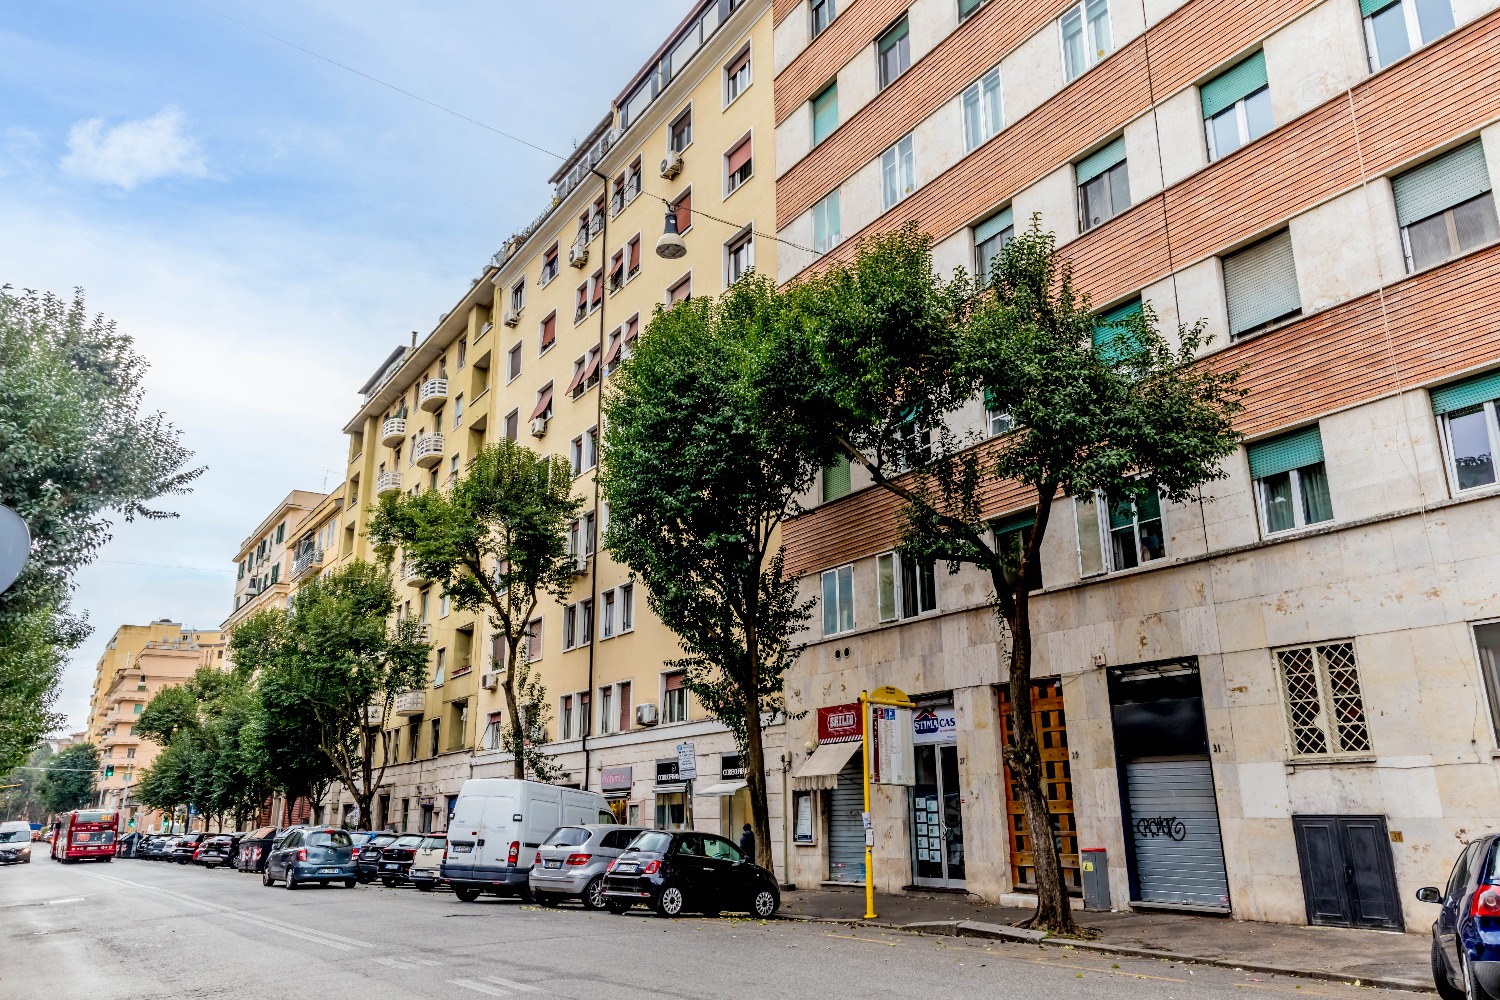 Appartamento in vendita a Roma, 1 locali, zona Zona: 2 . Flaminio, Parioli, Pinciano, Villa Borghese, prezzo € 142.000 | CambioCasa.it